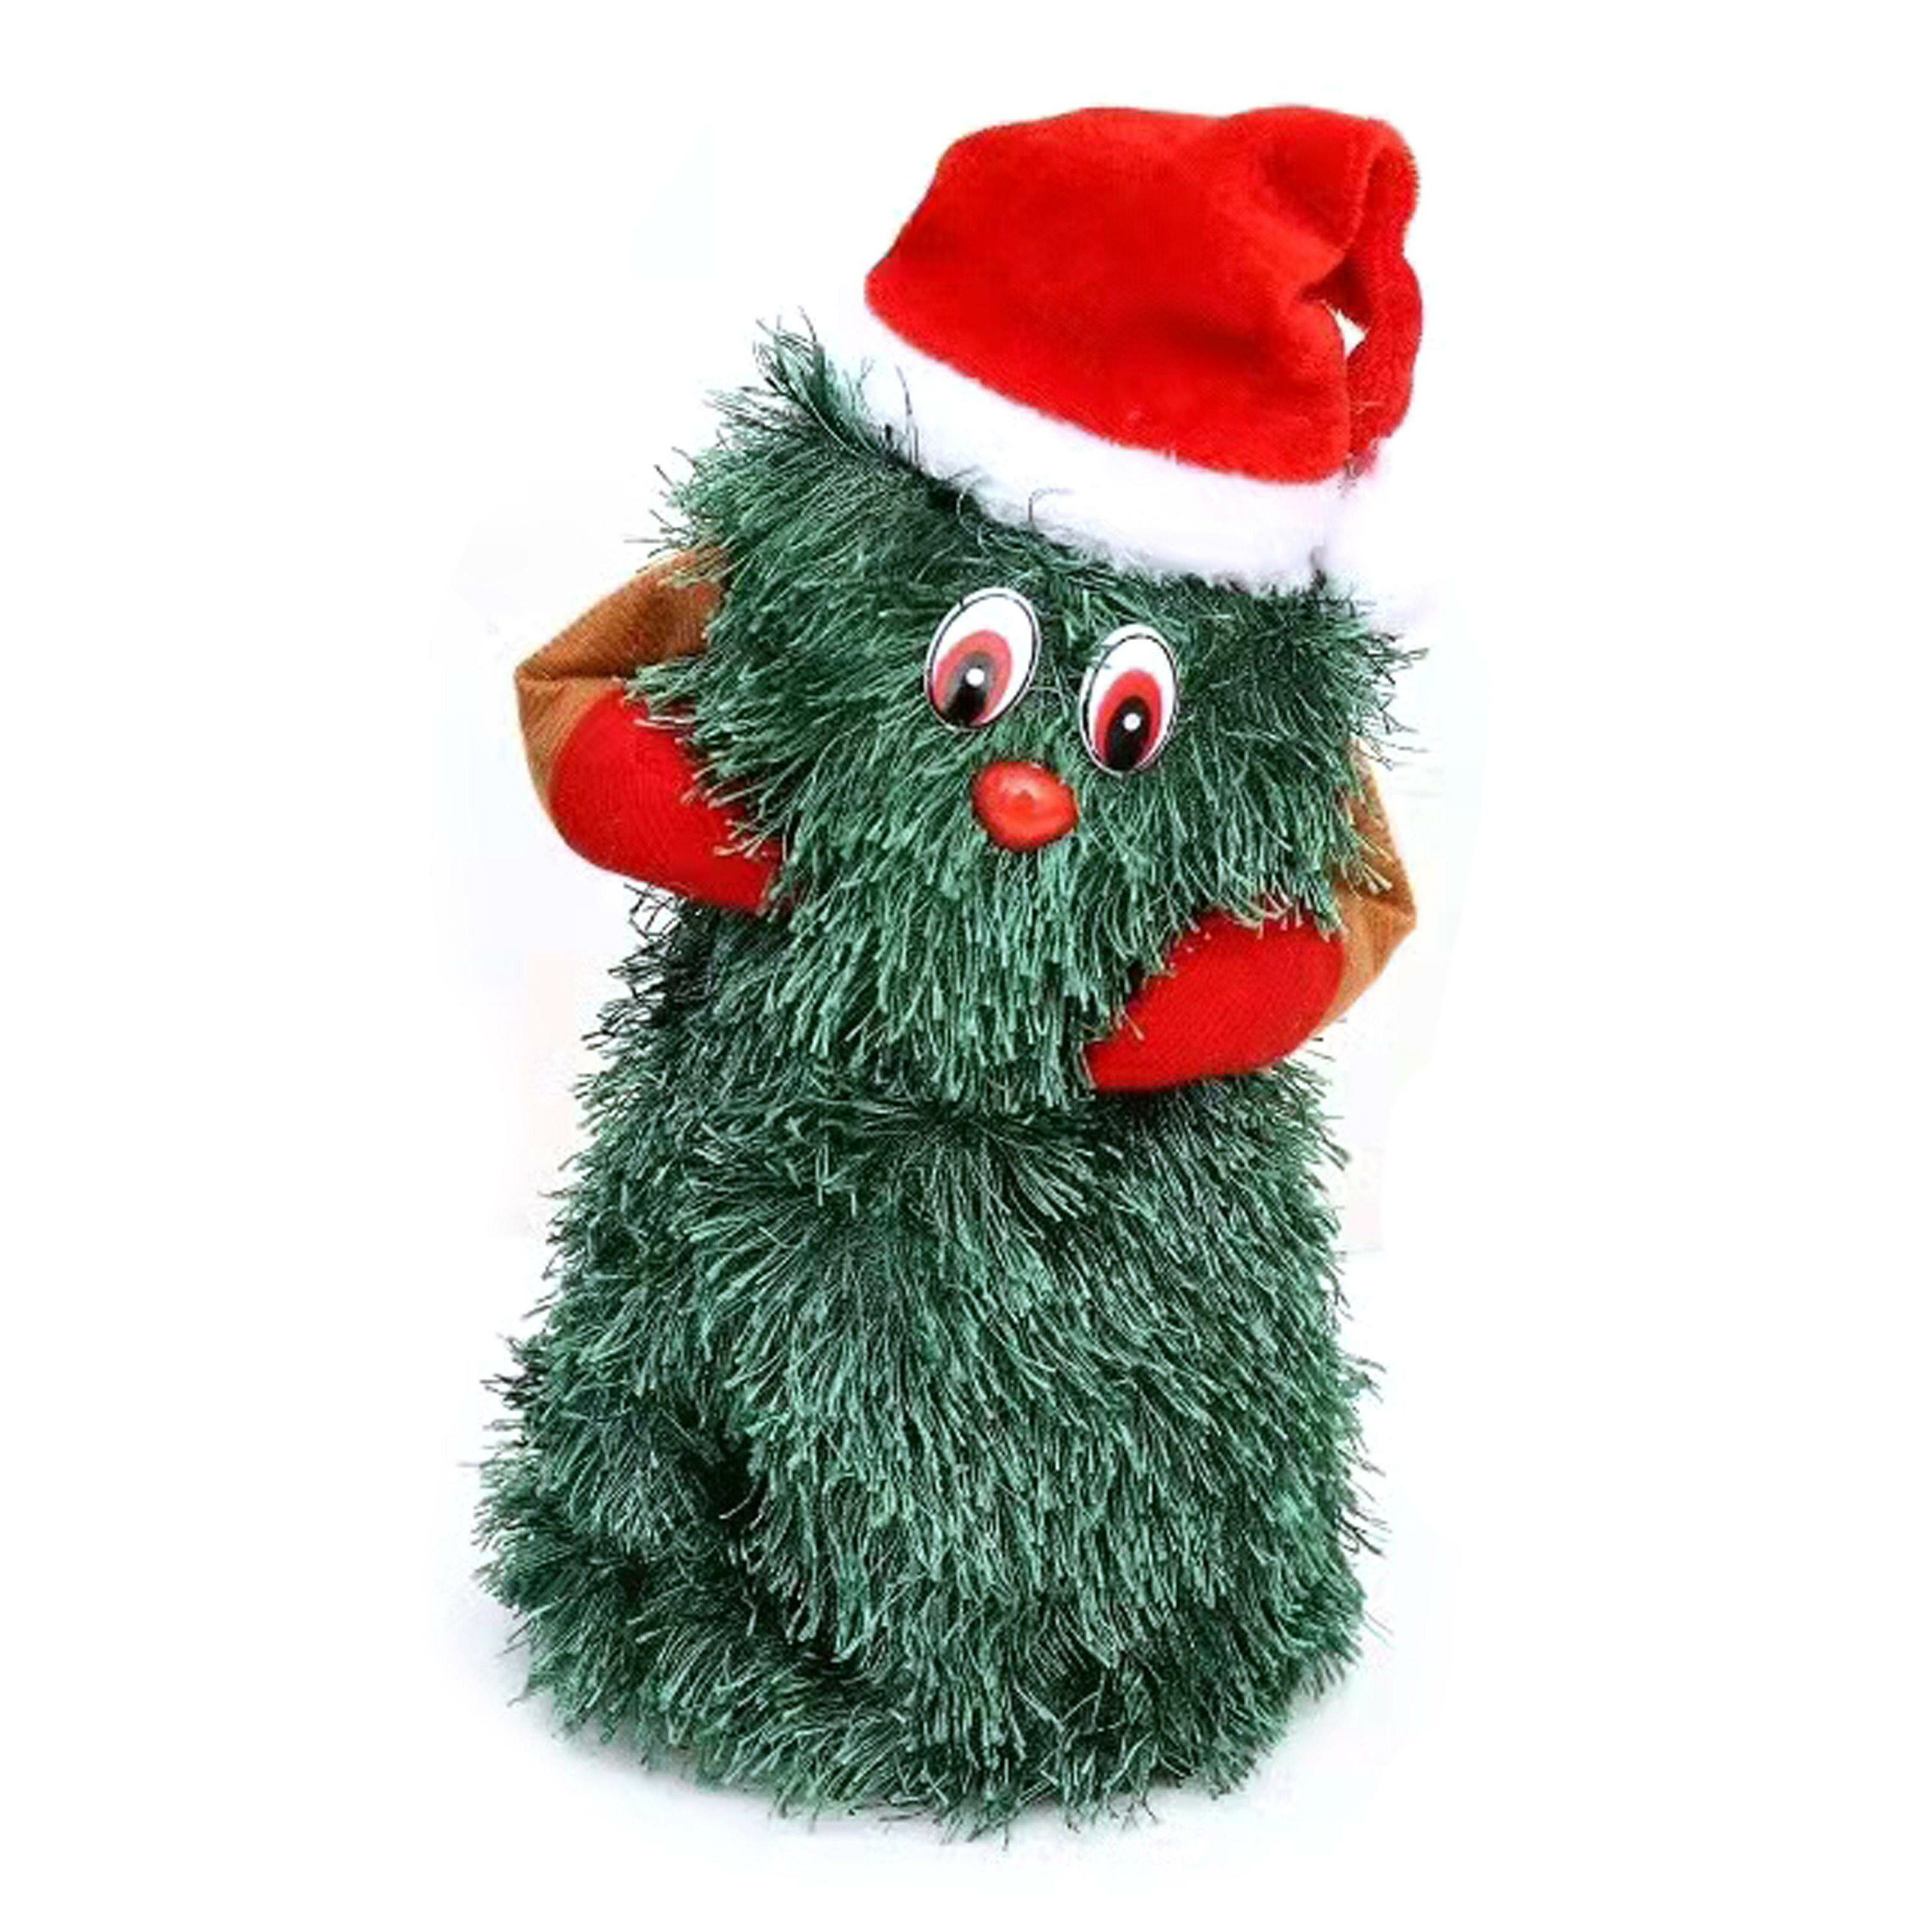 Merkloos Zingende en dansende kerstboom - kerst figuur - groen - H20 cm -